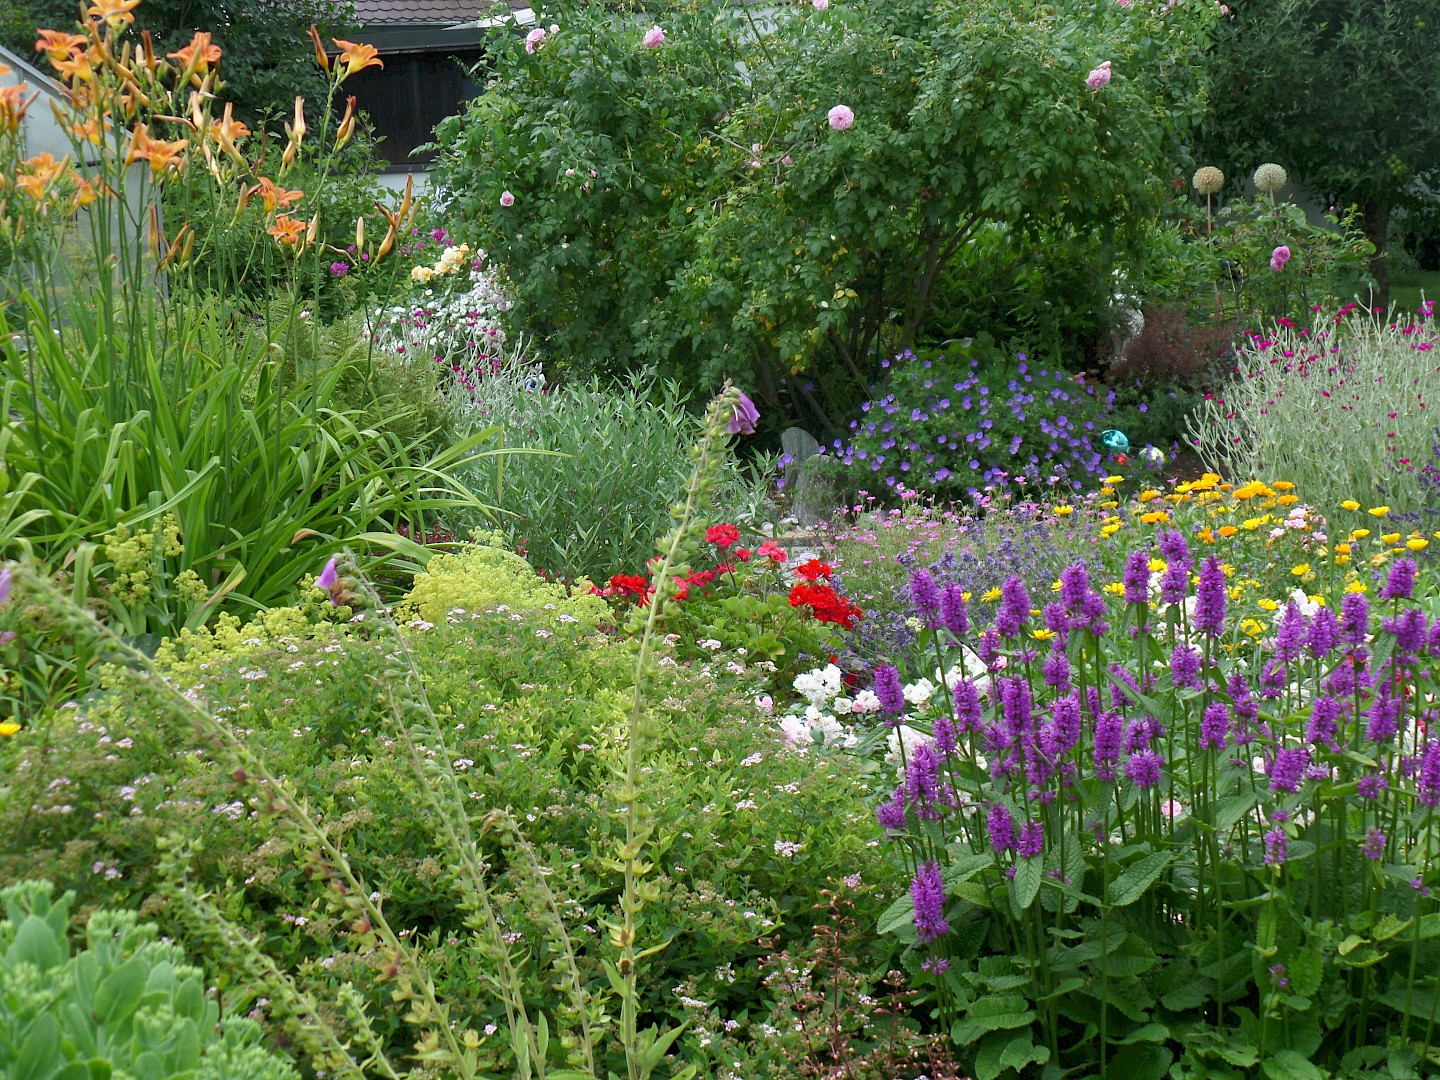 Flowering garden of Annette Tessaro